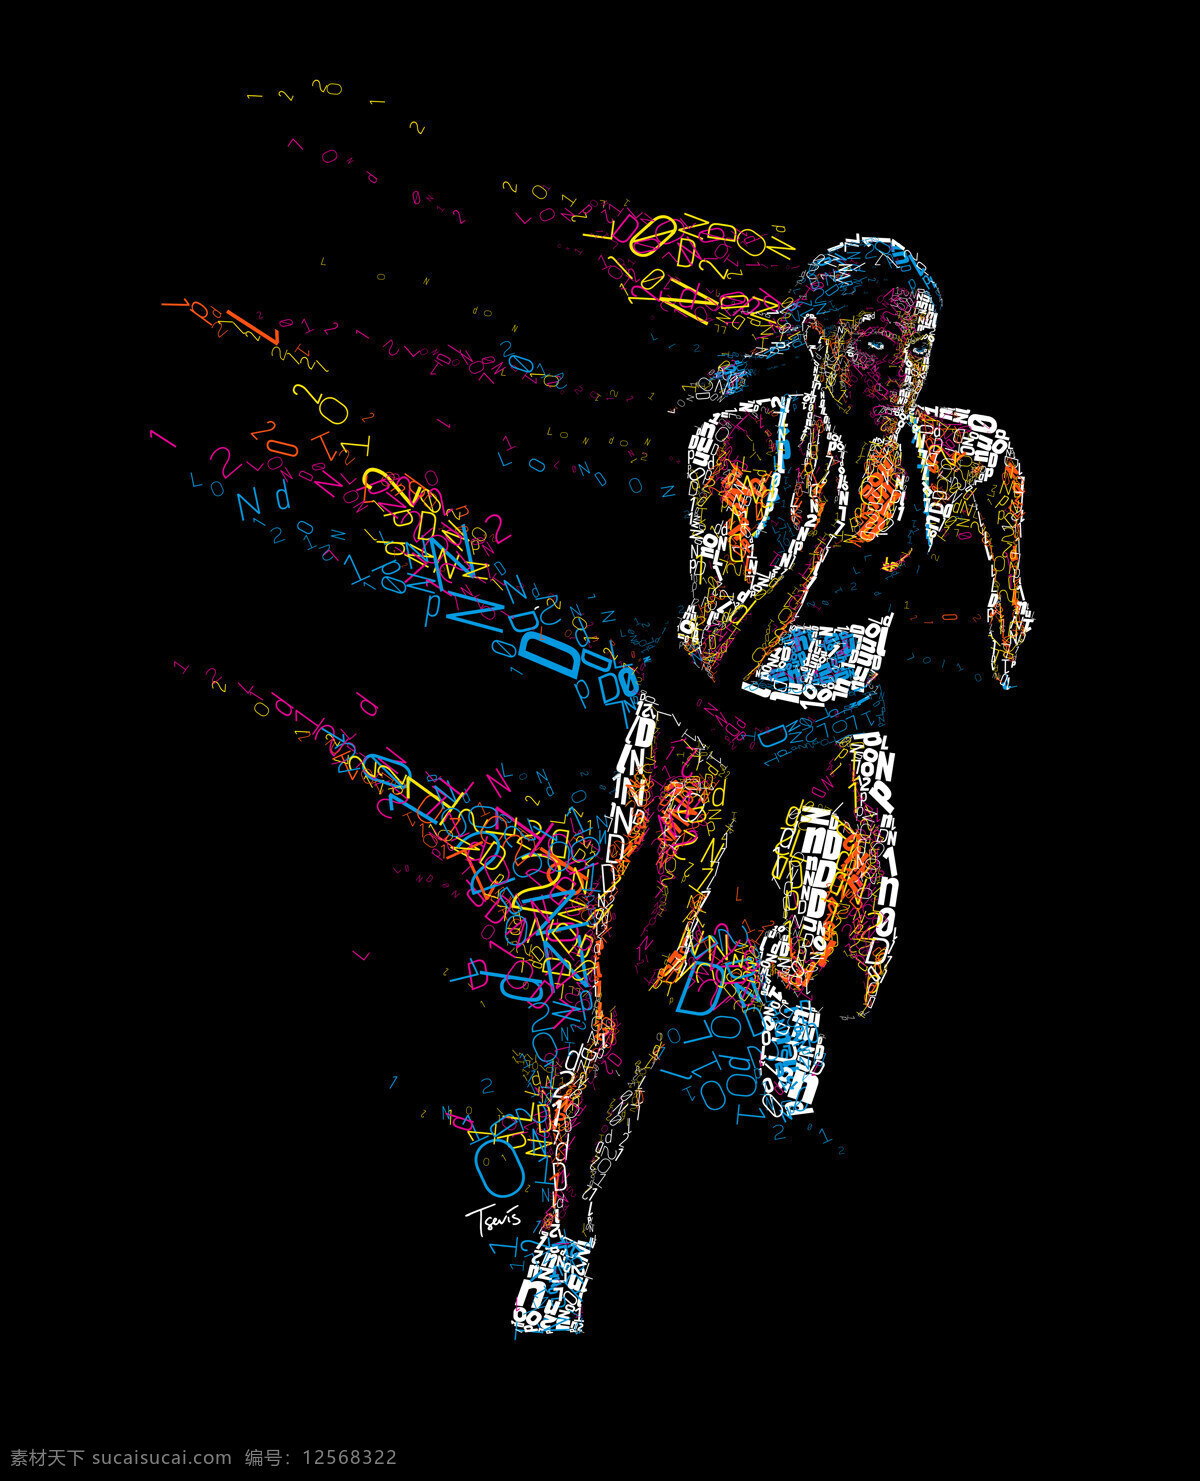 奔跑 赛跑 奥运会 运动 彩色 字母 运动会 健身 拼图